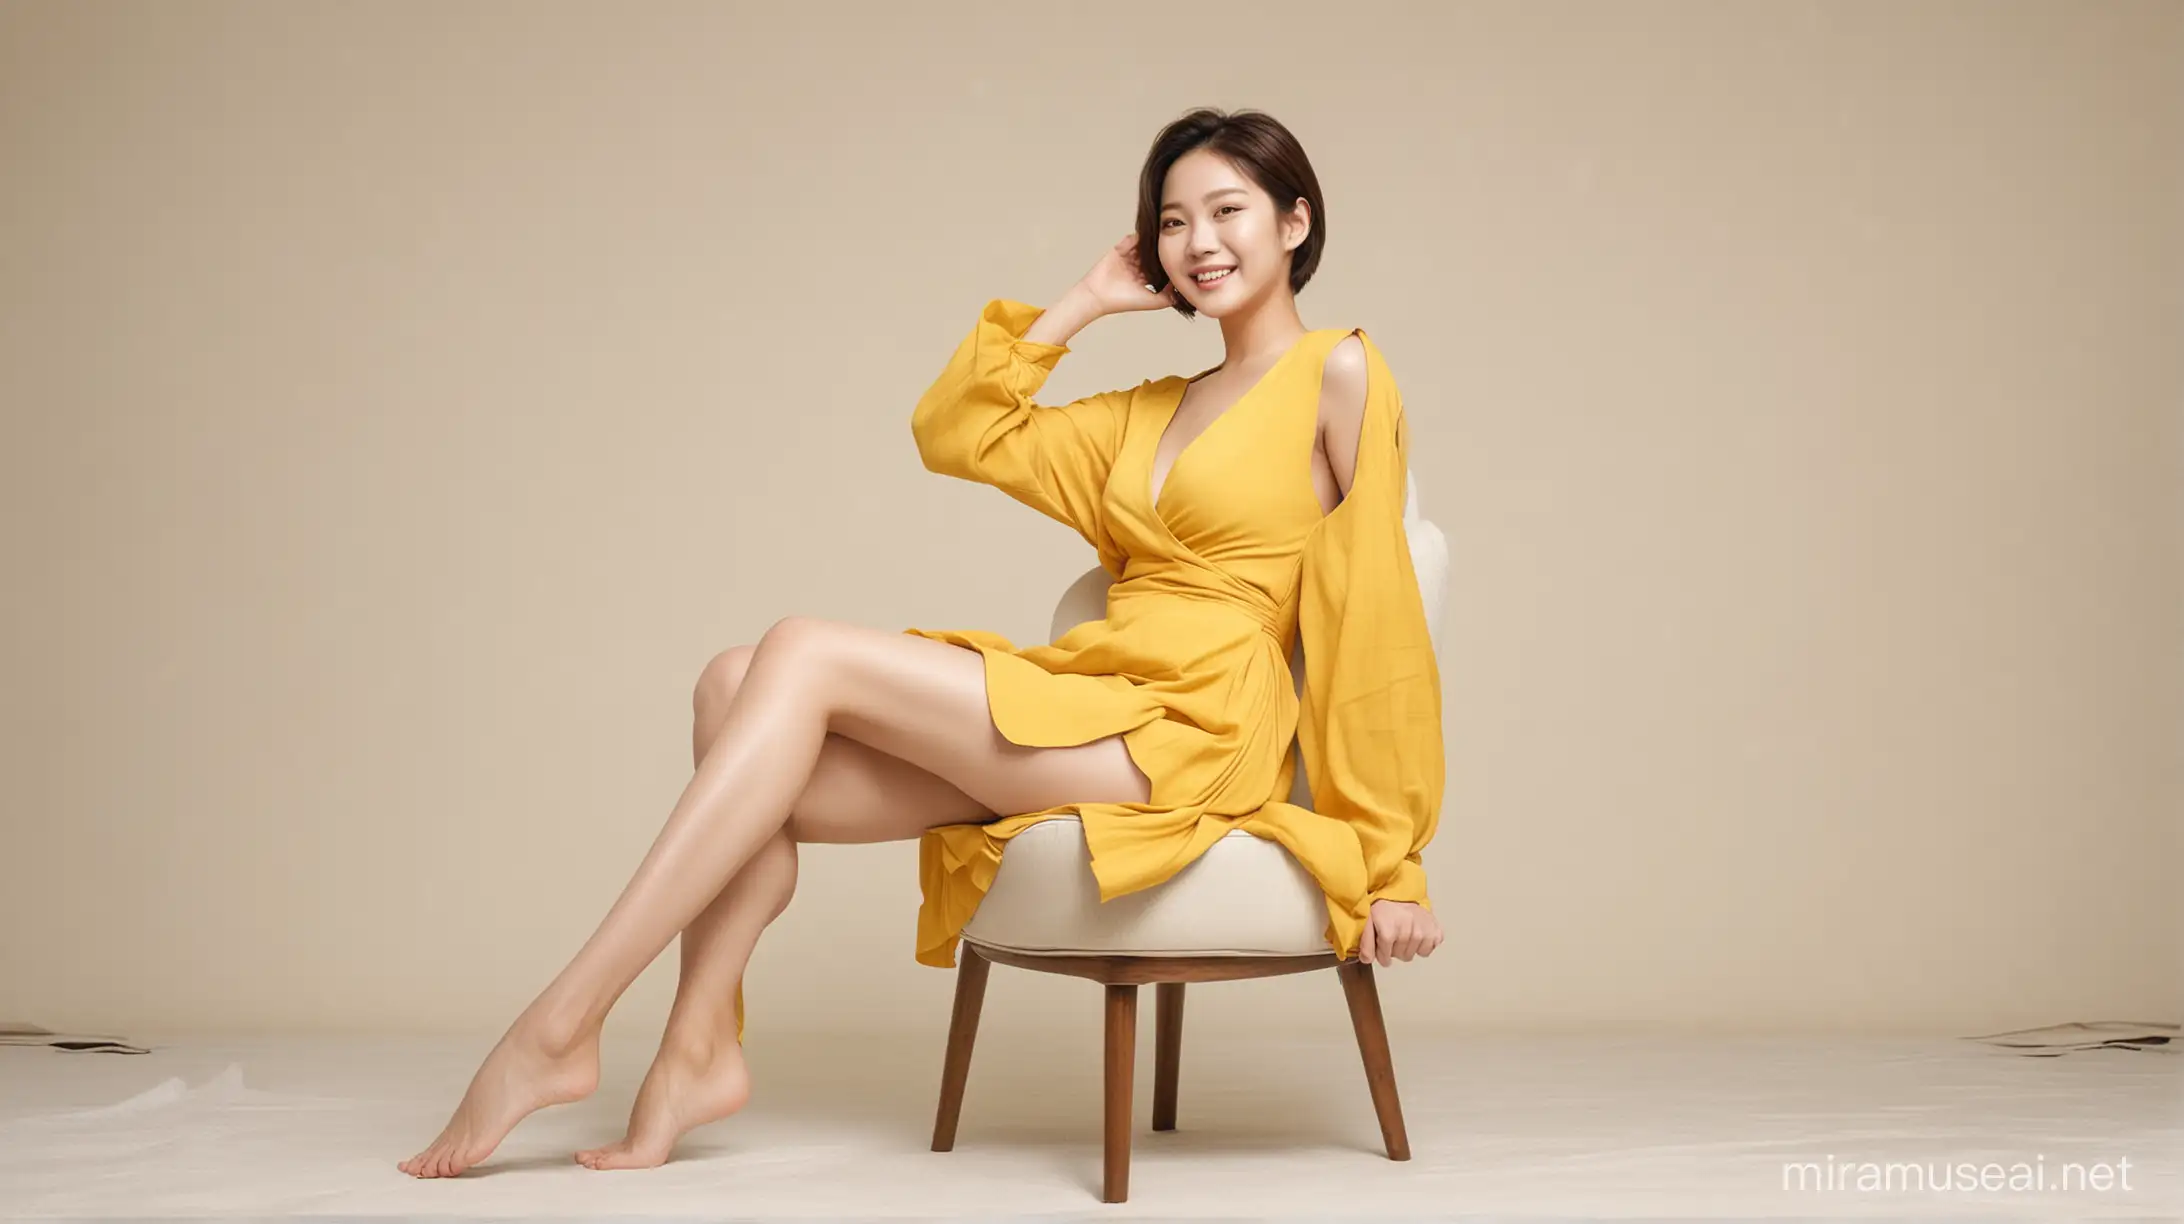 하얀색 배경의 방, 노란색 커튼, 다리를 벌리고 의자억 앉아 있는 여자, 누드, 알몸, 단발머리, 환한 웃음, 한국의 여배우 전지현을 닮음